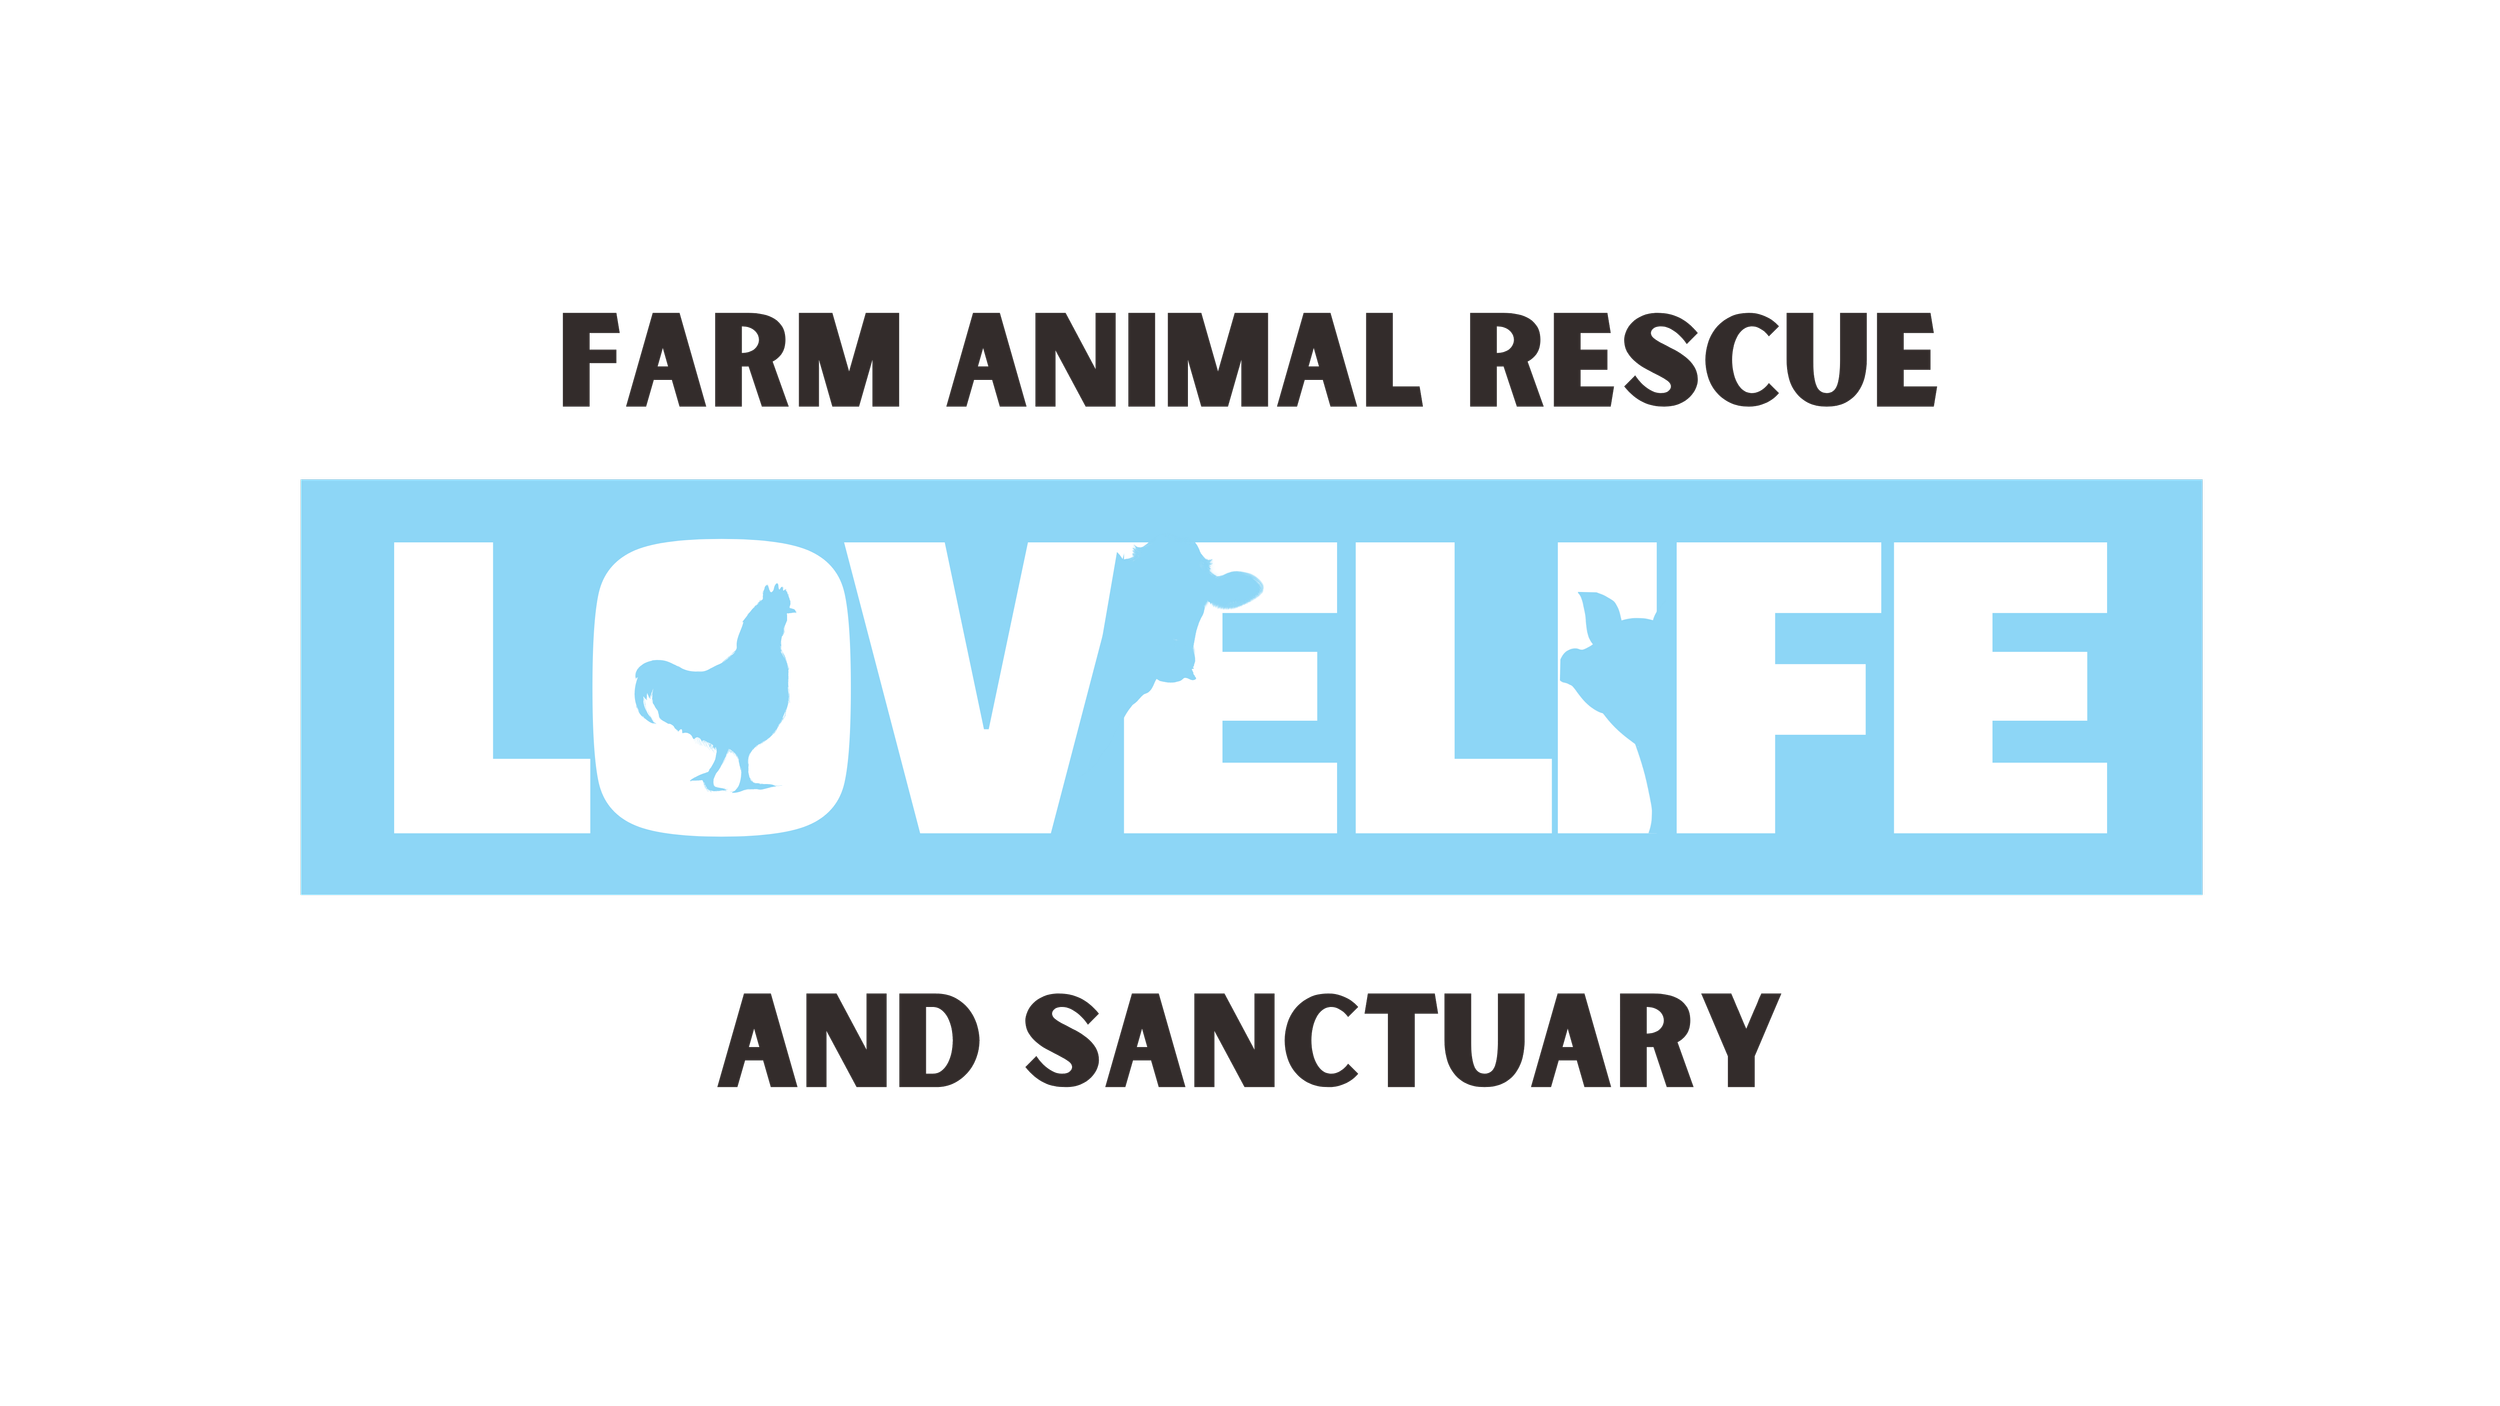 Life Animal Rescue